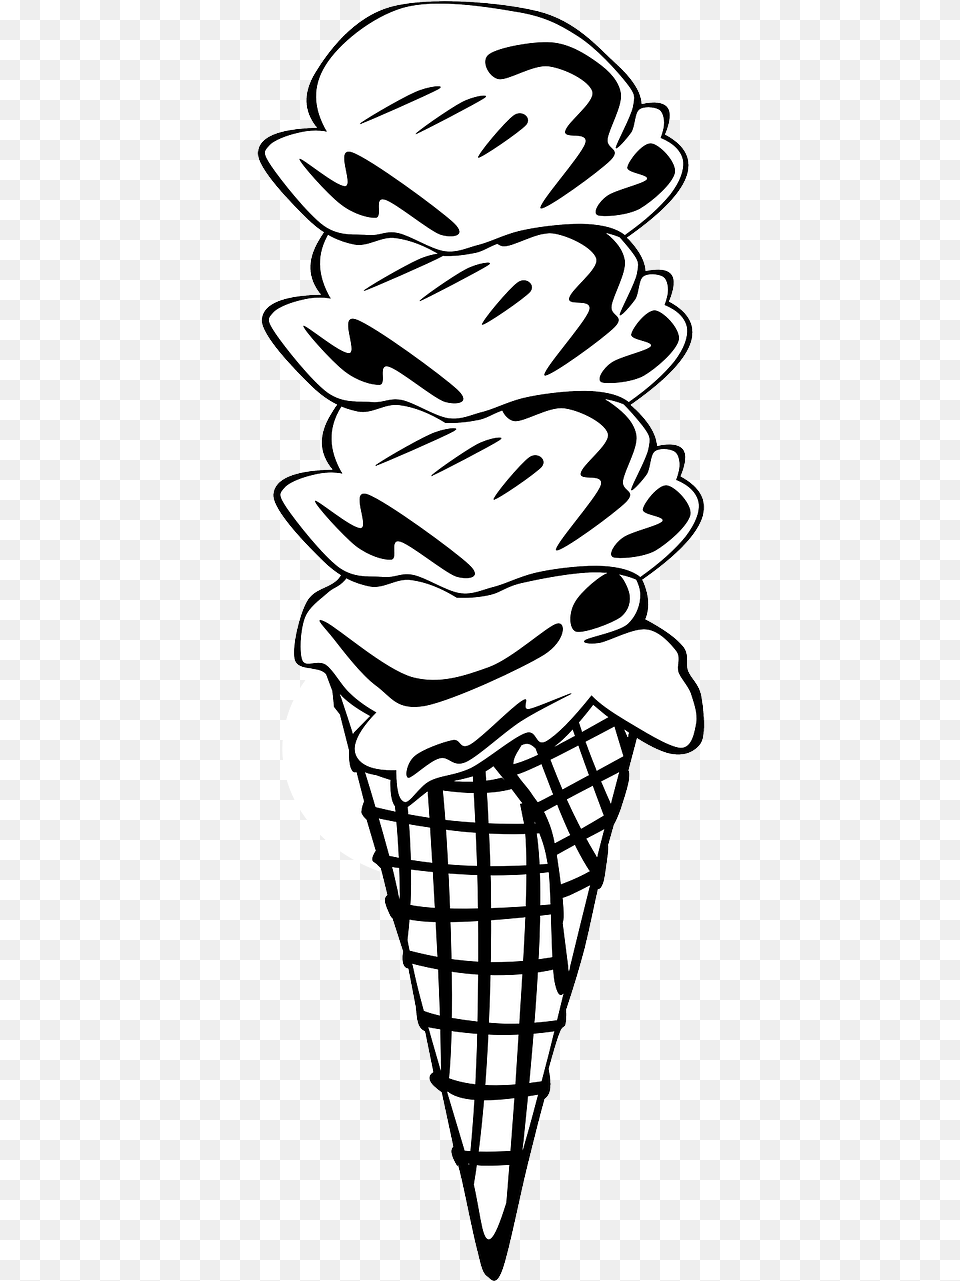 Ice Cream Cone Clip Art, Dessert, Food, Ice Cream, Stencil Free Png Download